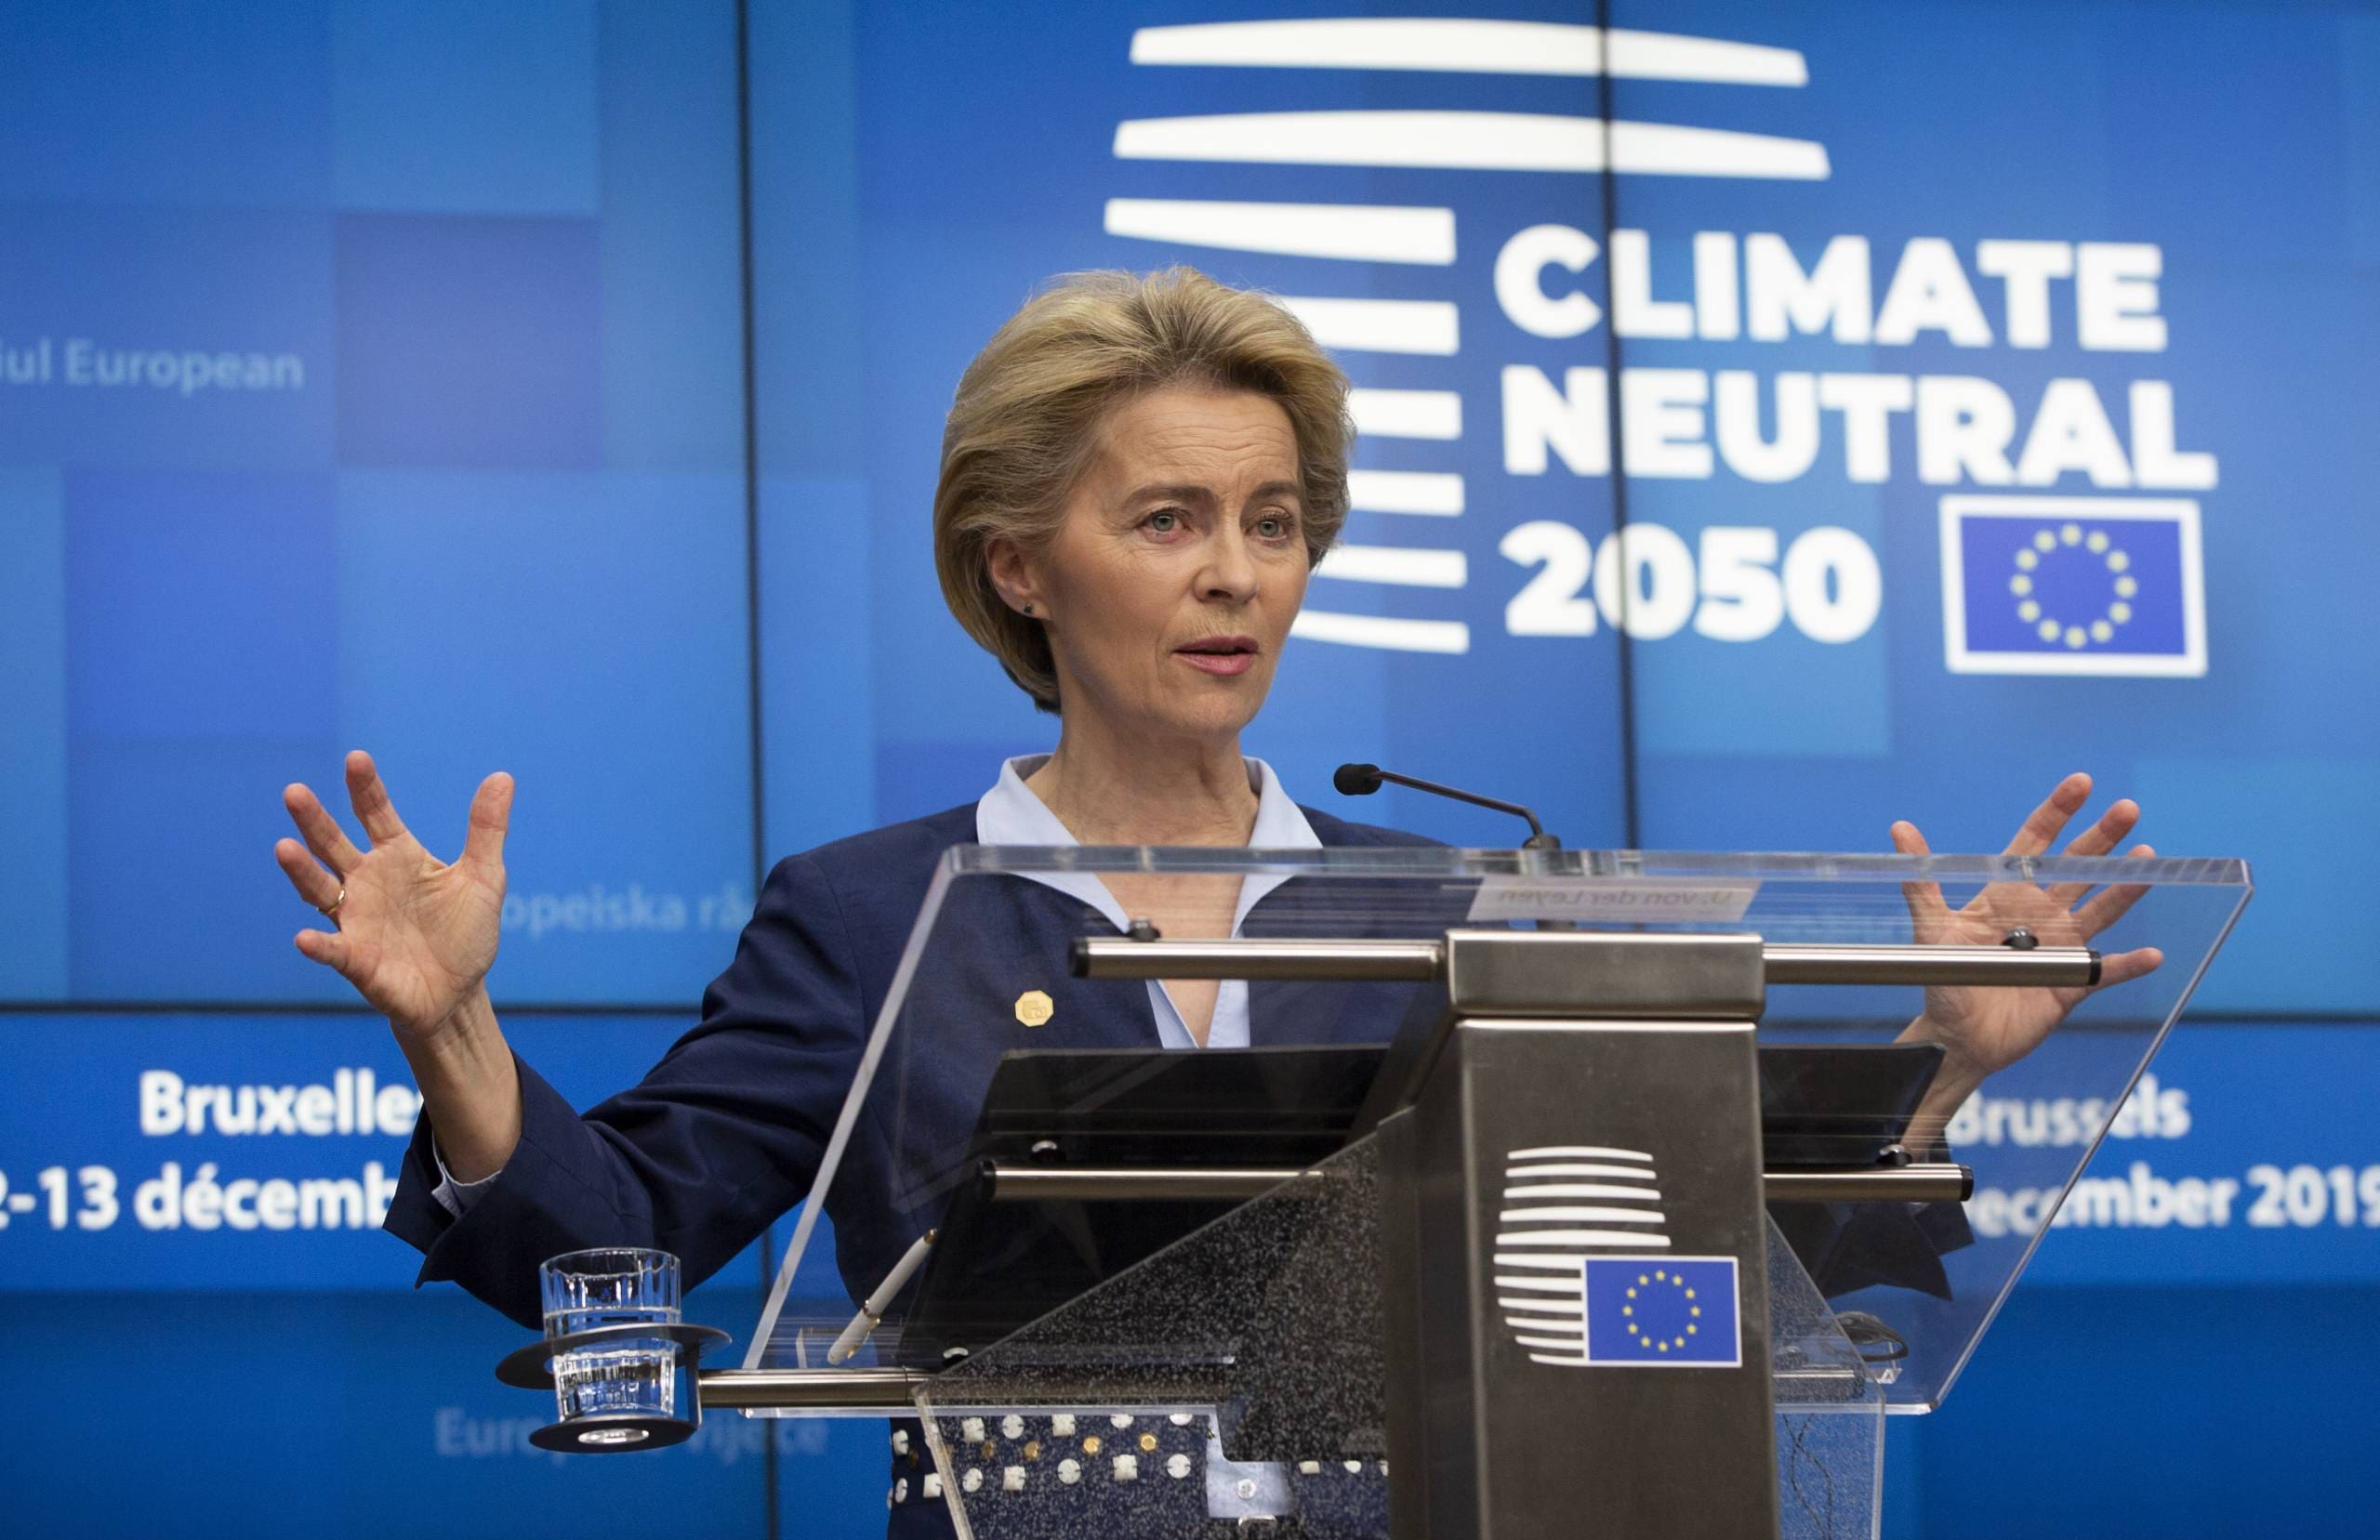 polen-reicht-klage-gegen-„autoritaere“-eu-klimapolitik-ein